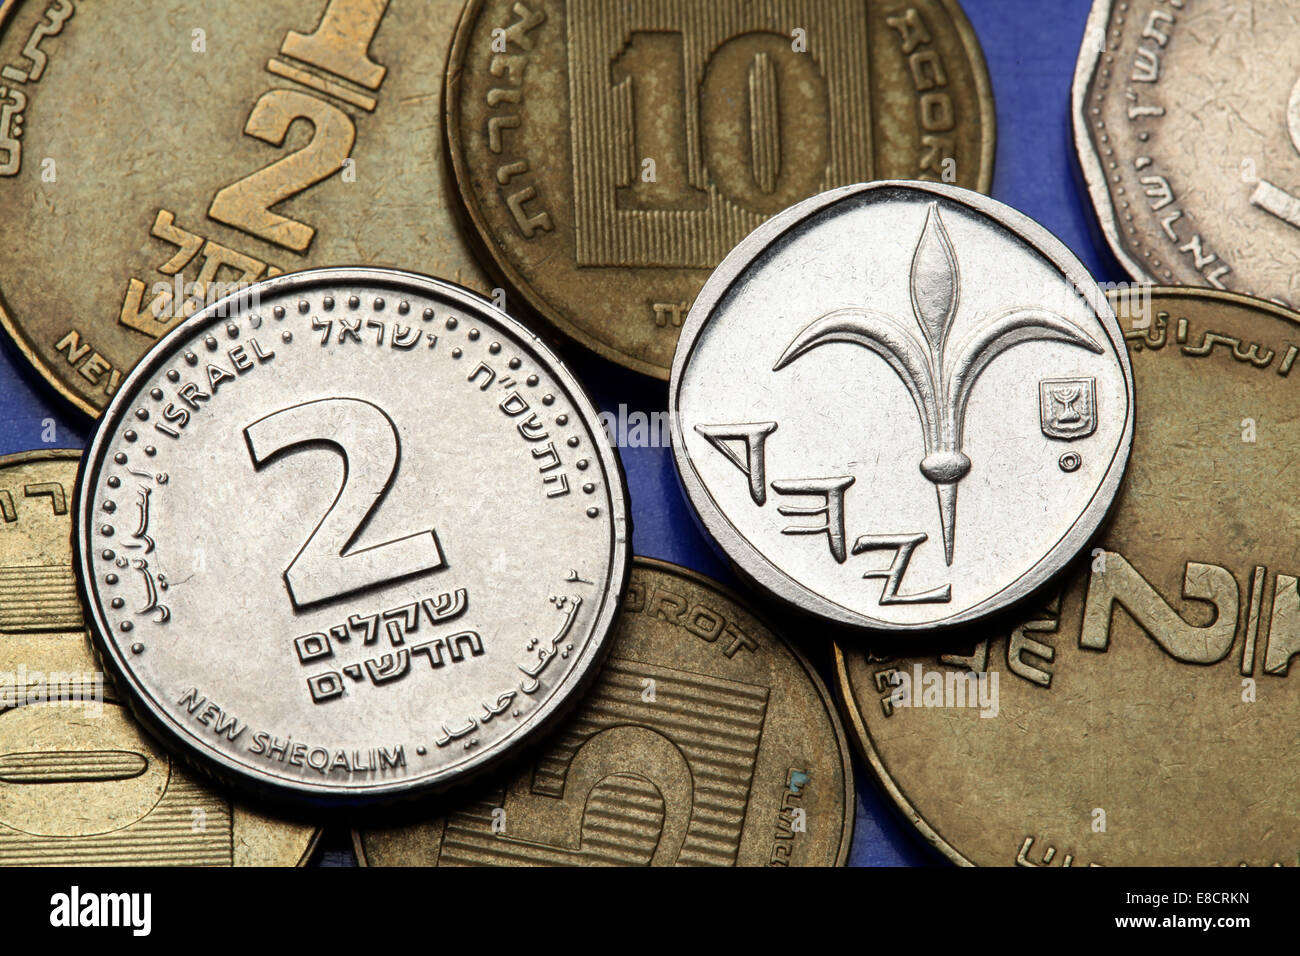 Sechs Münzen Des Israelischen Staats - Schekel Stockbild - Bild von  kandelaber, über: 108162691